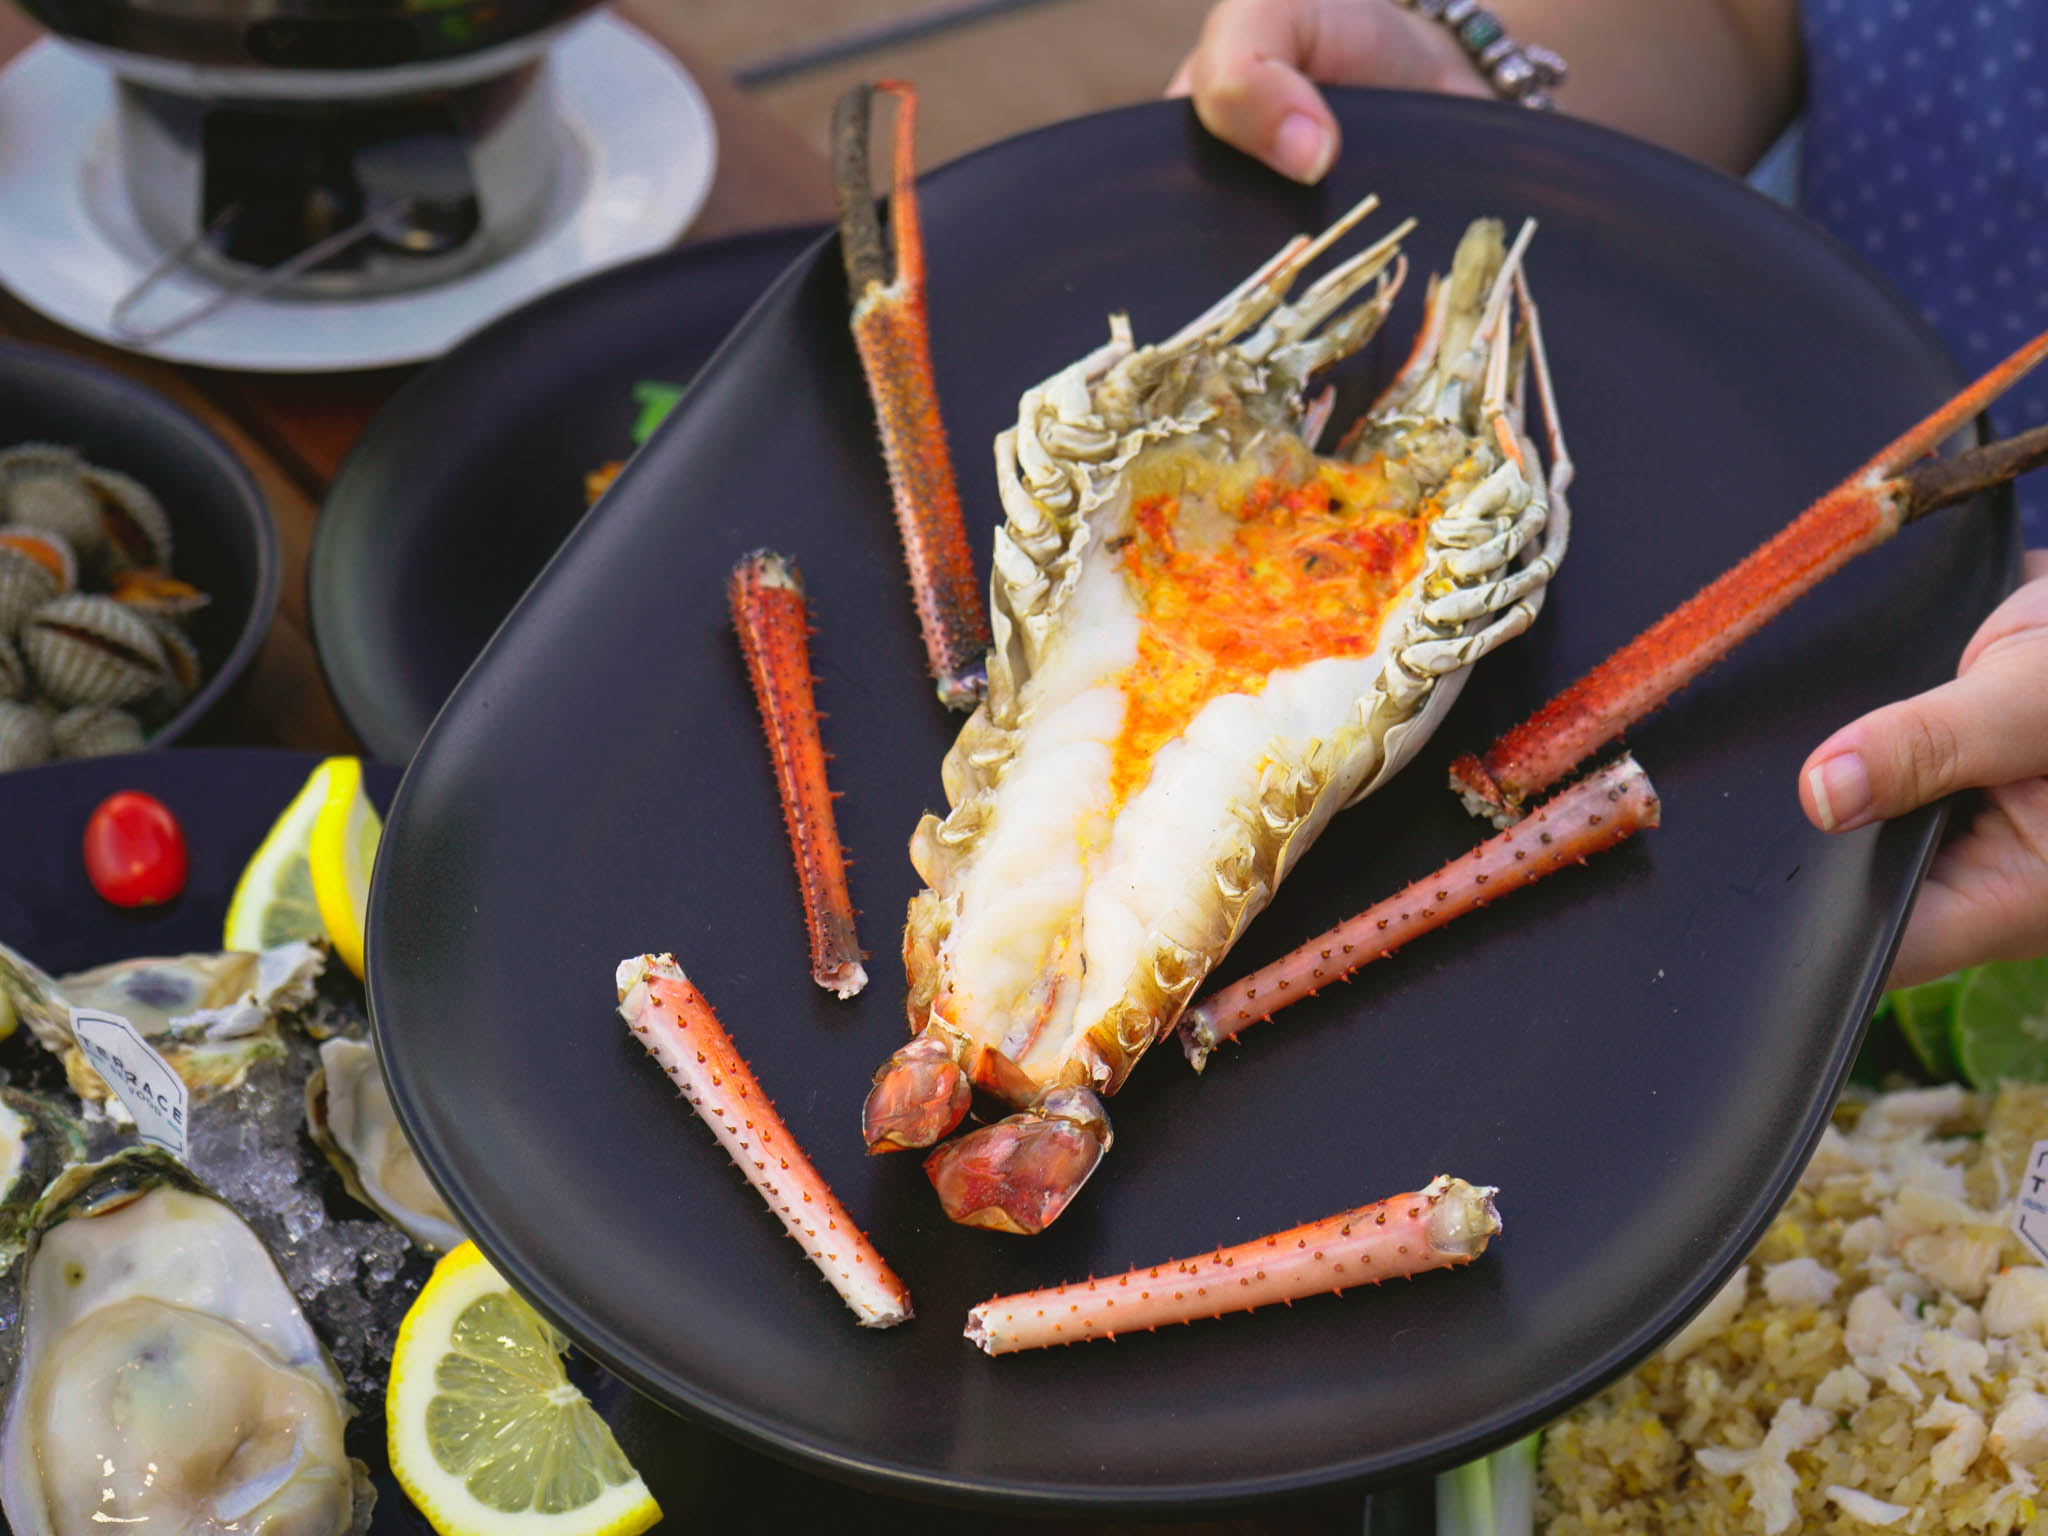 อาหารทะเลเชียงใหม่ กุ้งแม่น้ำ Terrace Seafood ซีฟู๊ดเชียงใหม่ Chaingmai Seafood